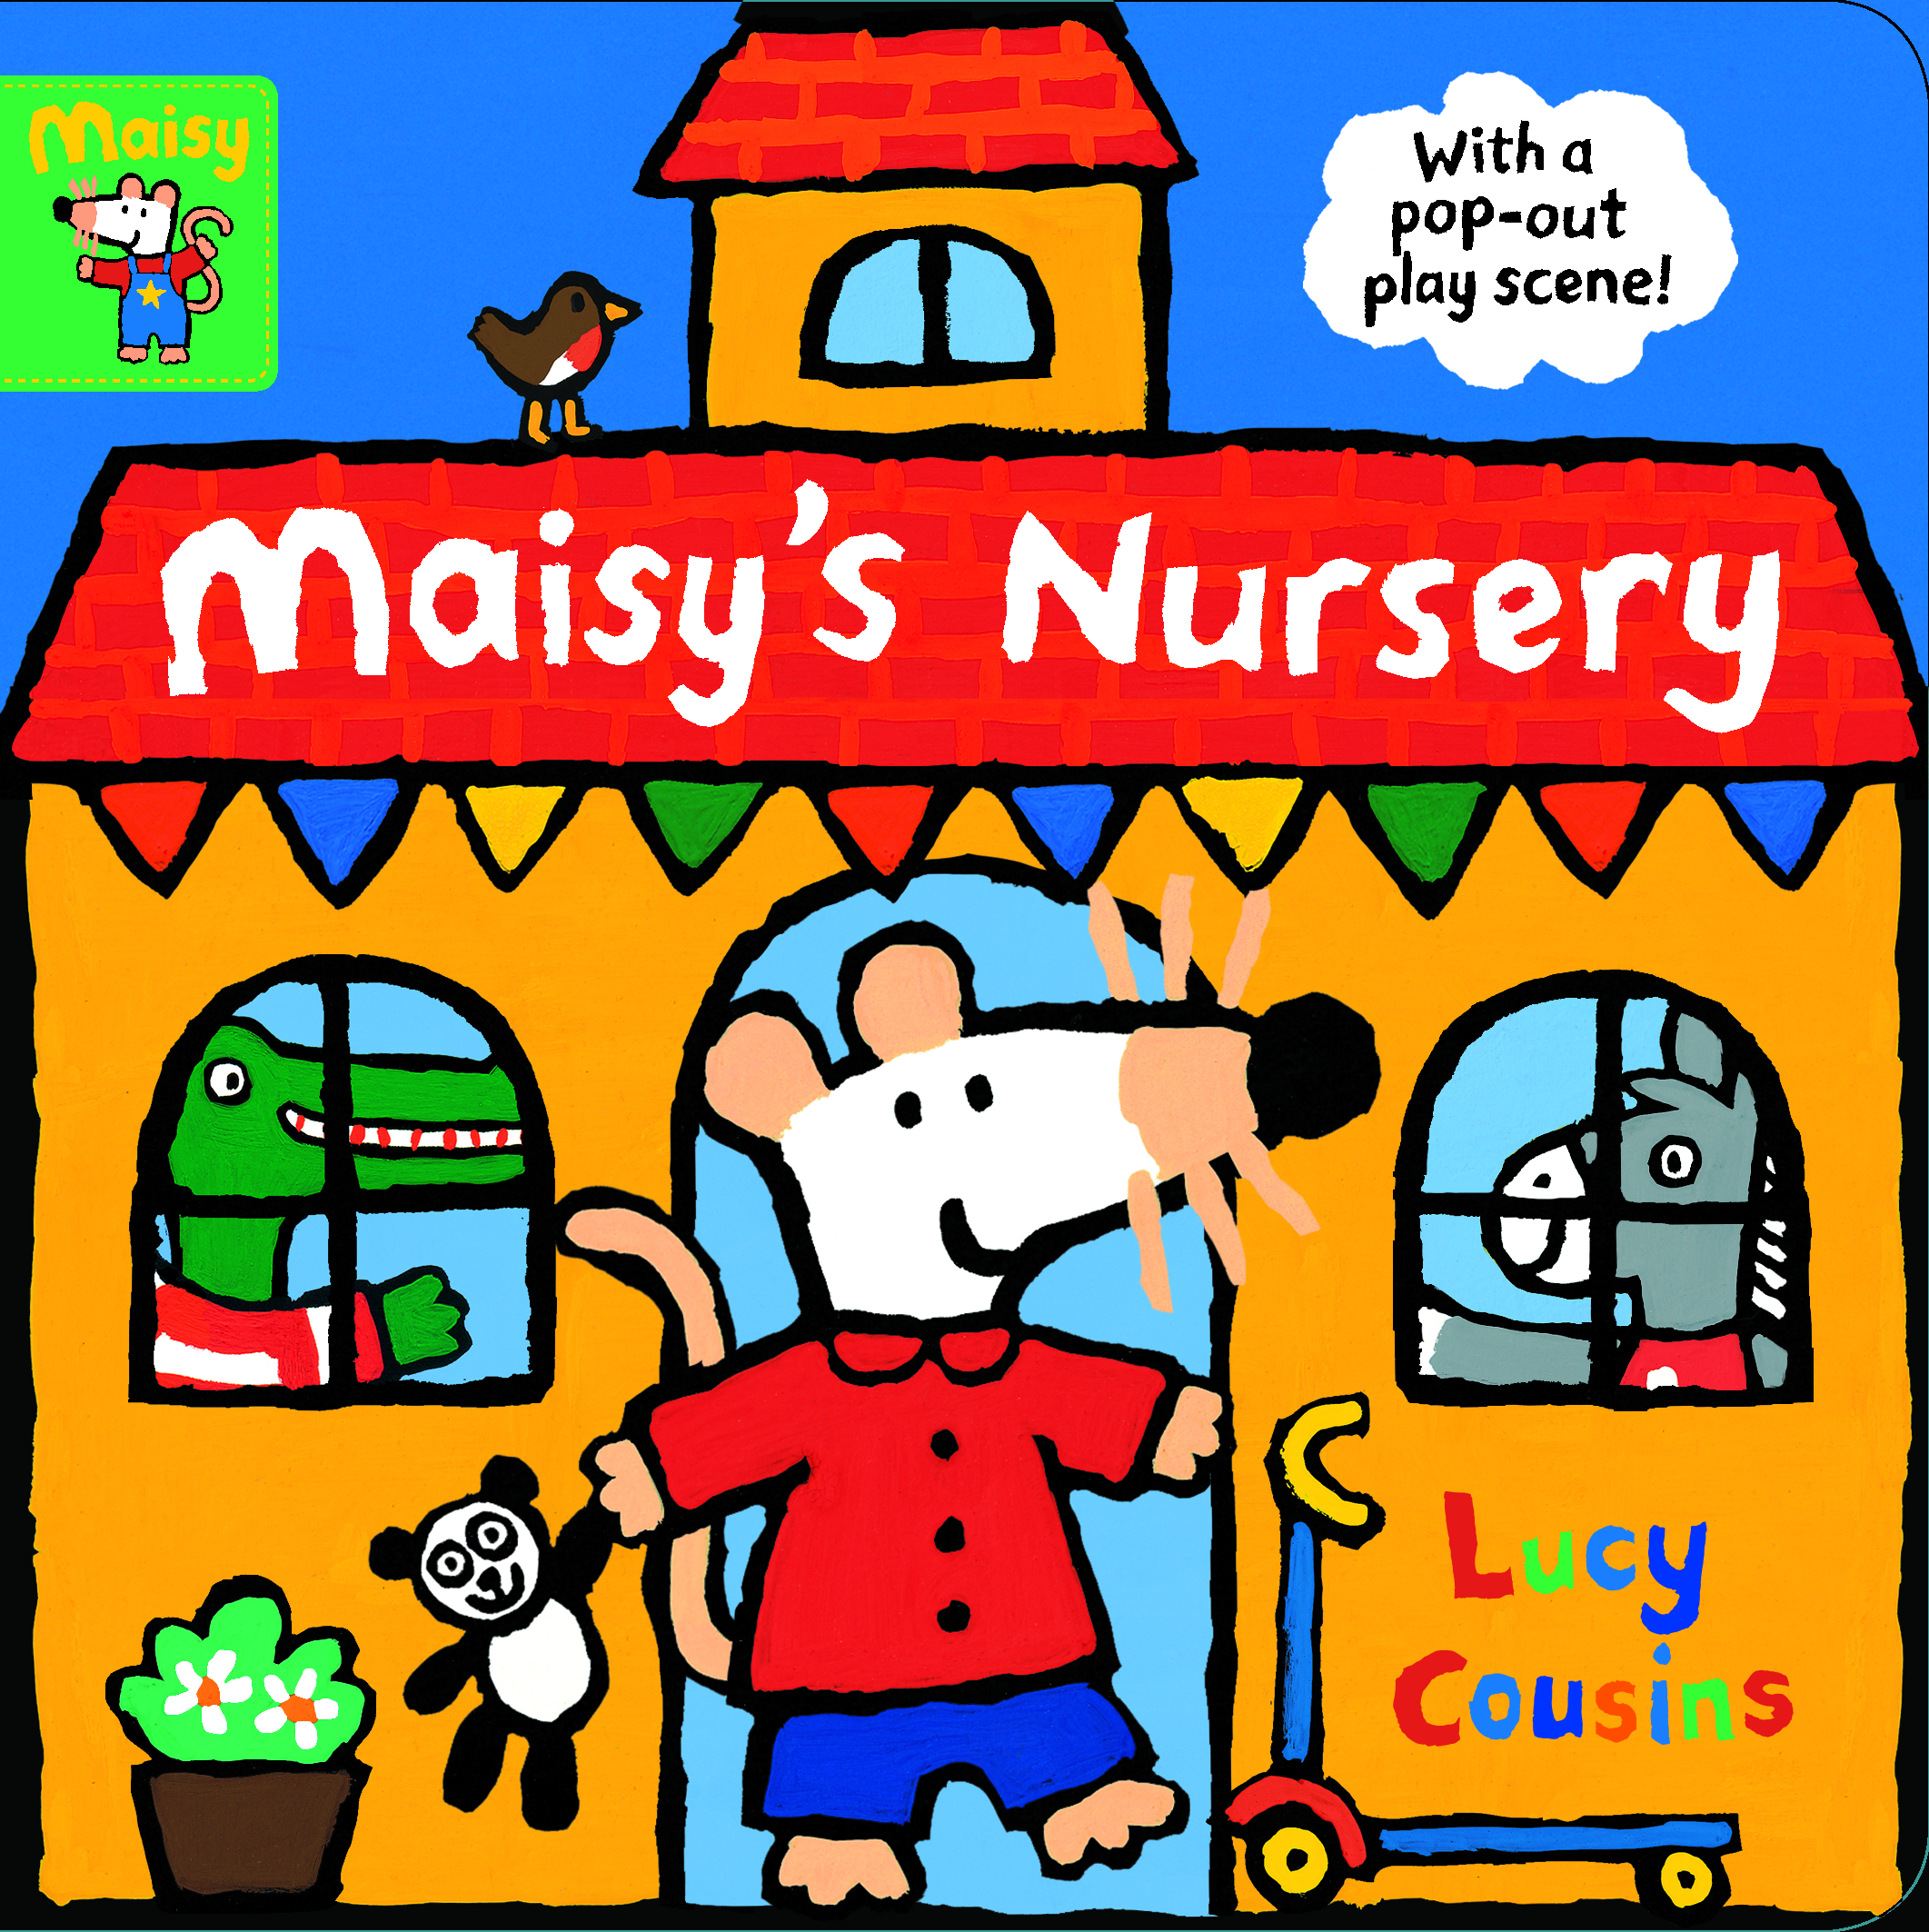 Maisy-s-Nursery-With-a-pop-out-play-scene